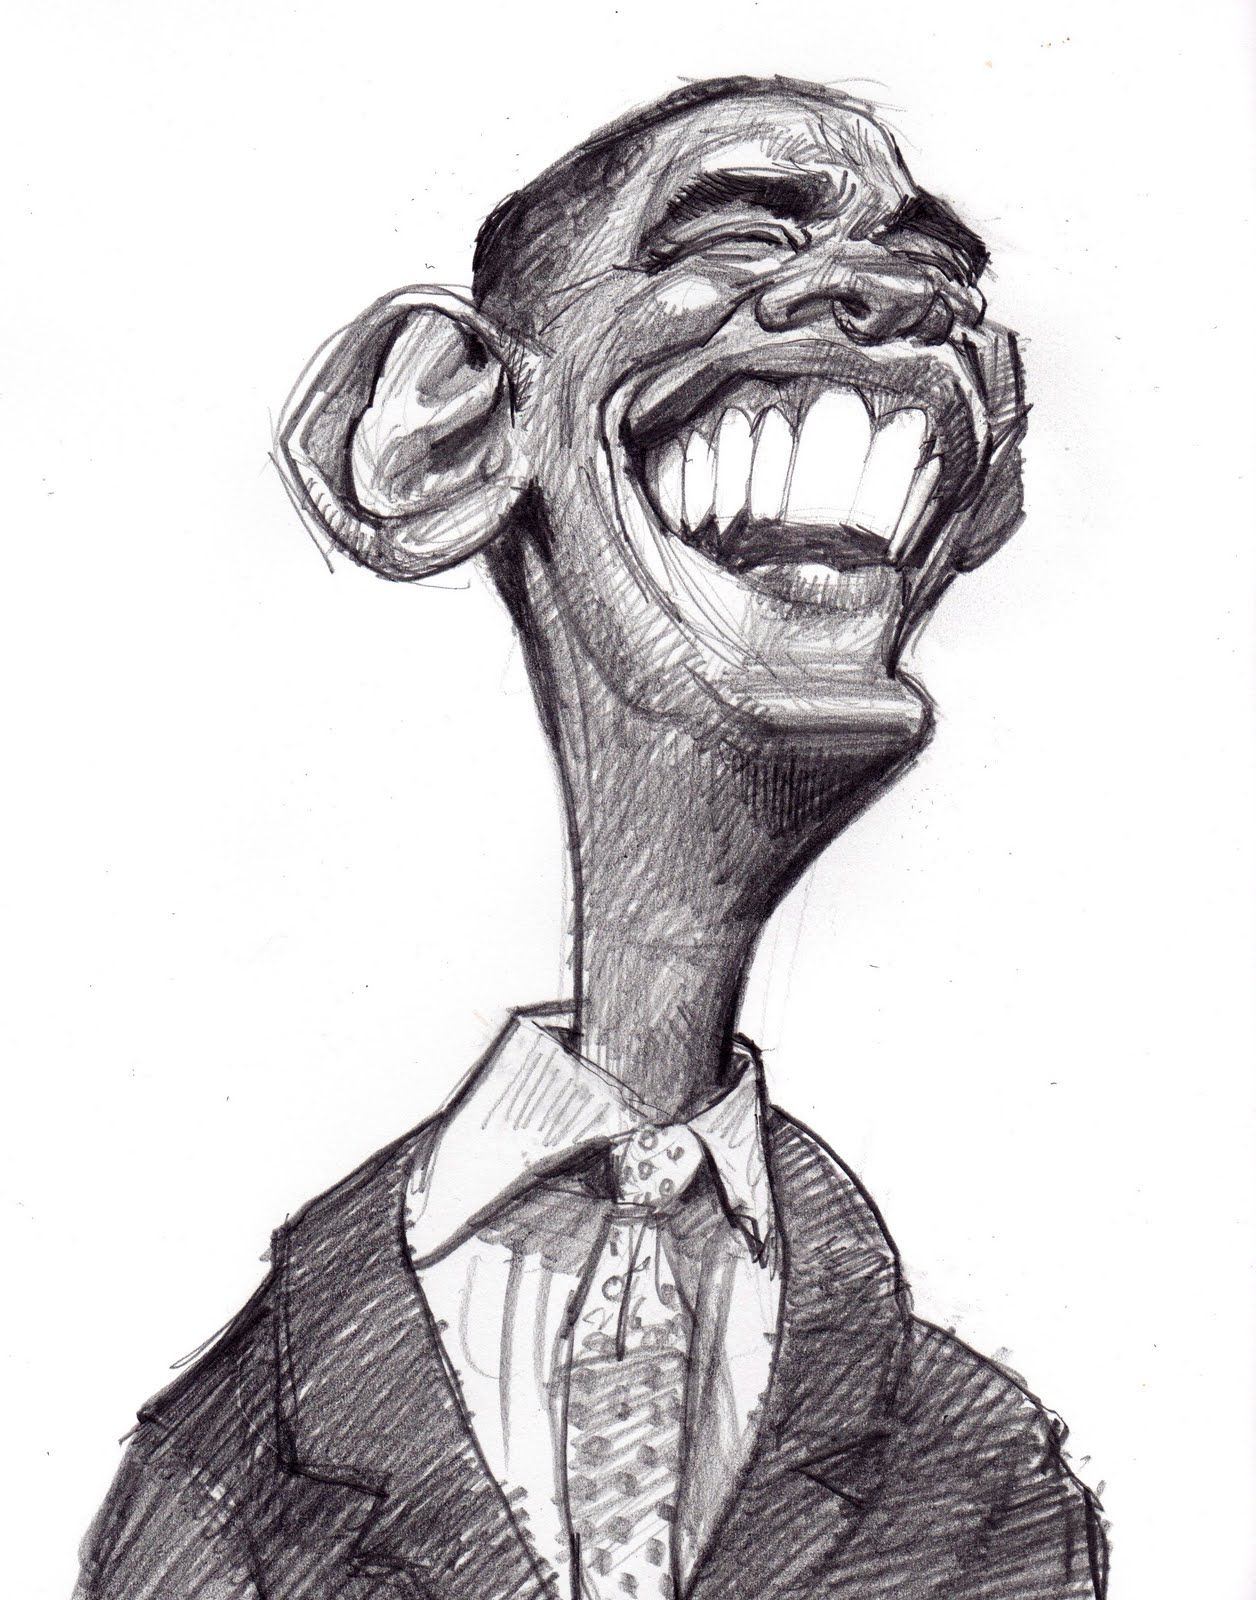 Сатирический портрет 6. Сатирический портрет Обама. Сатирический портрет Артура пирожкова. Сатирический портрет Милохина. Сатирические образы человека.